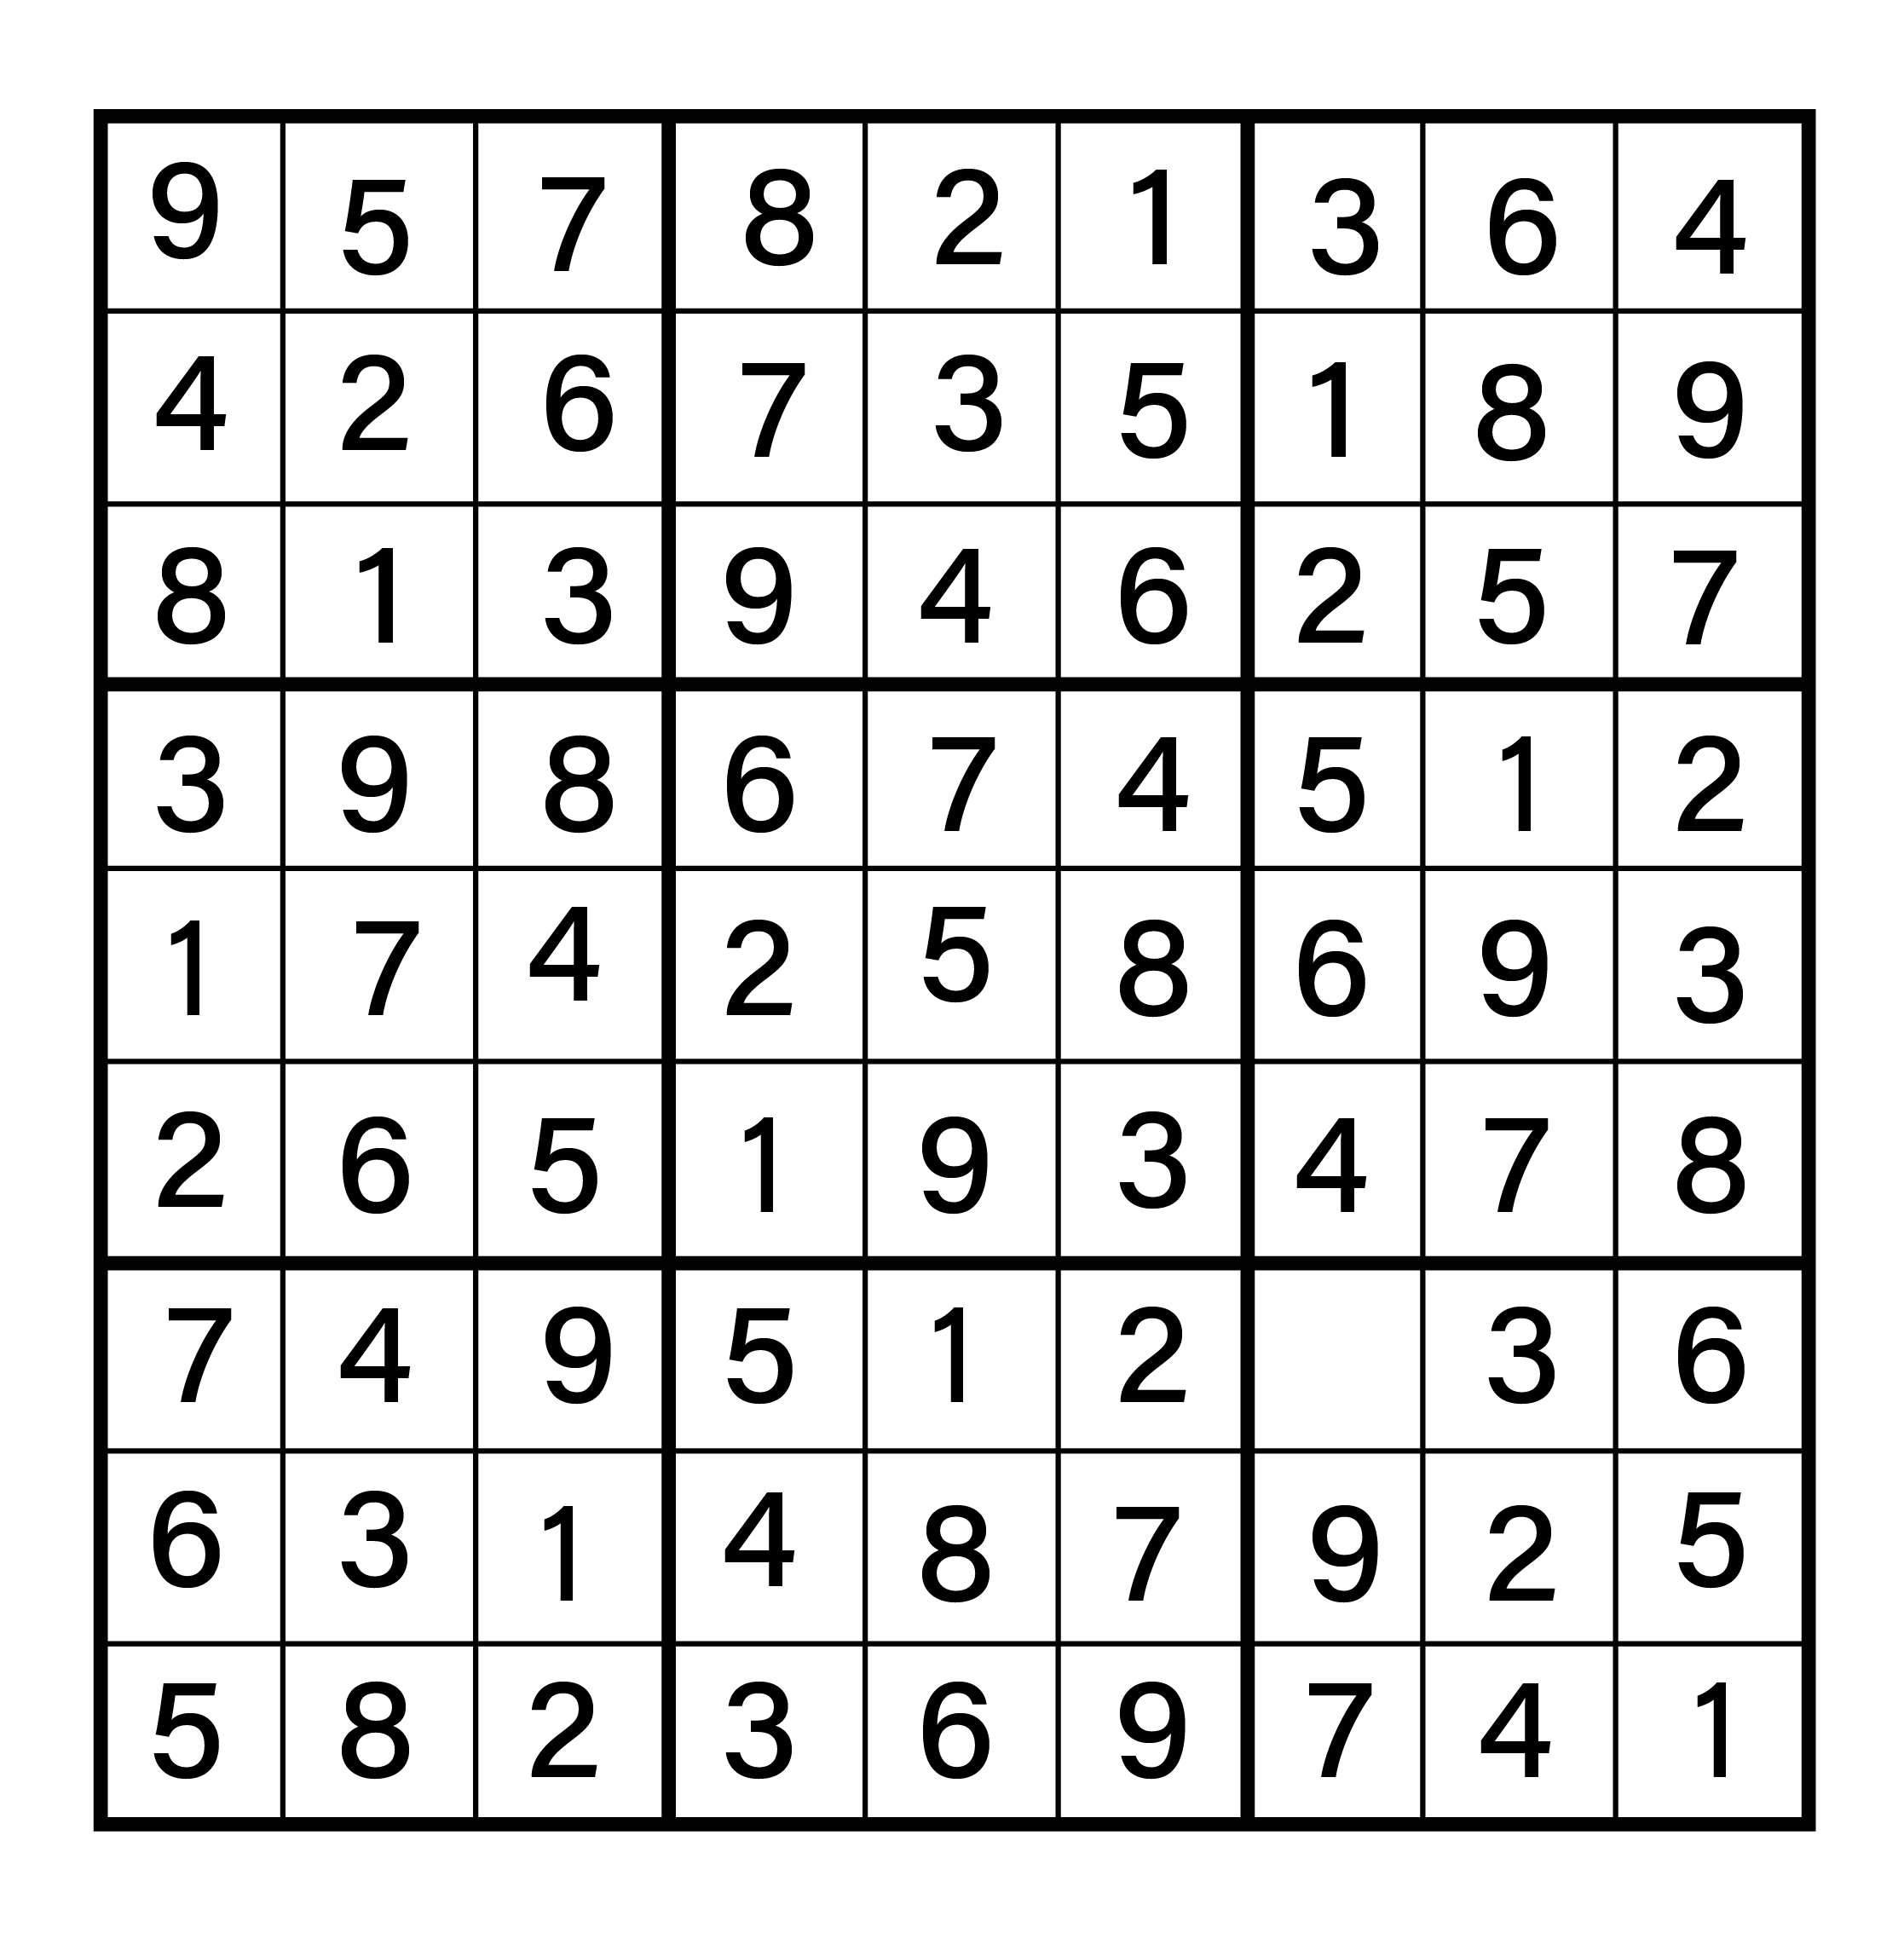 July 8 Sudoku Solution